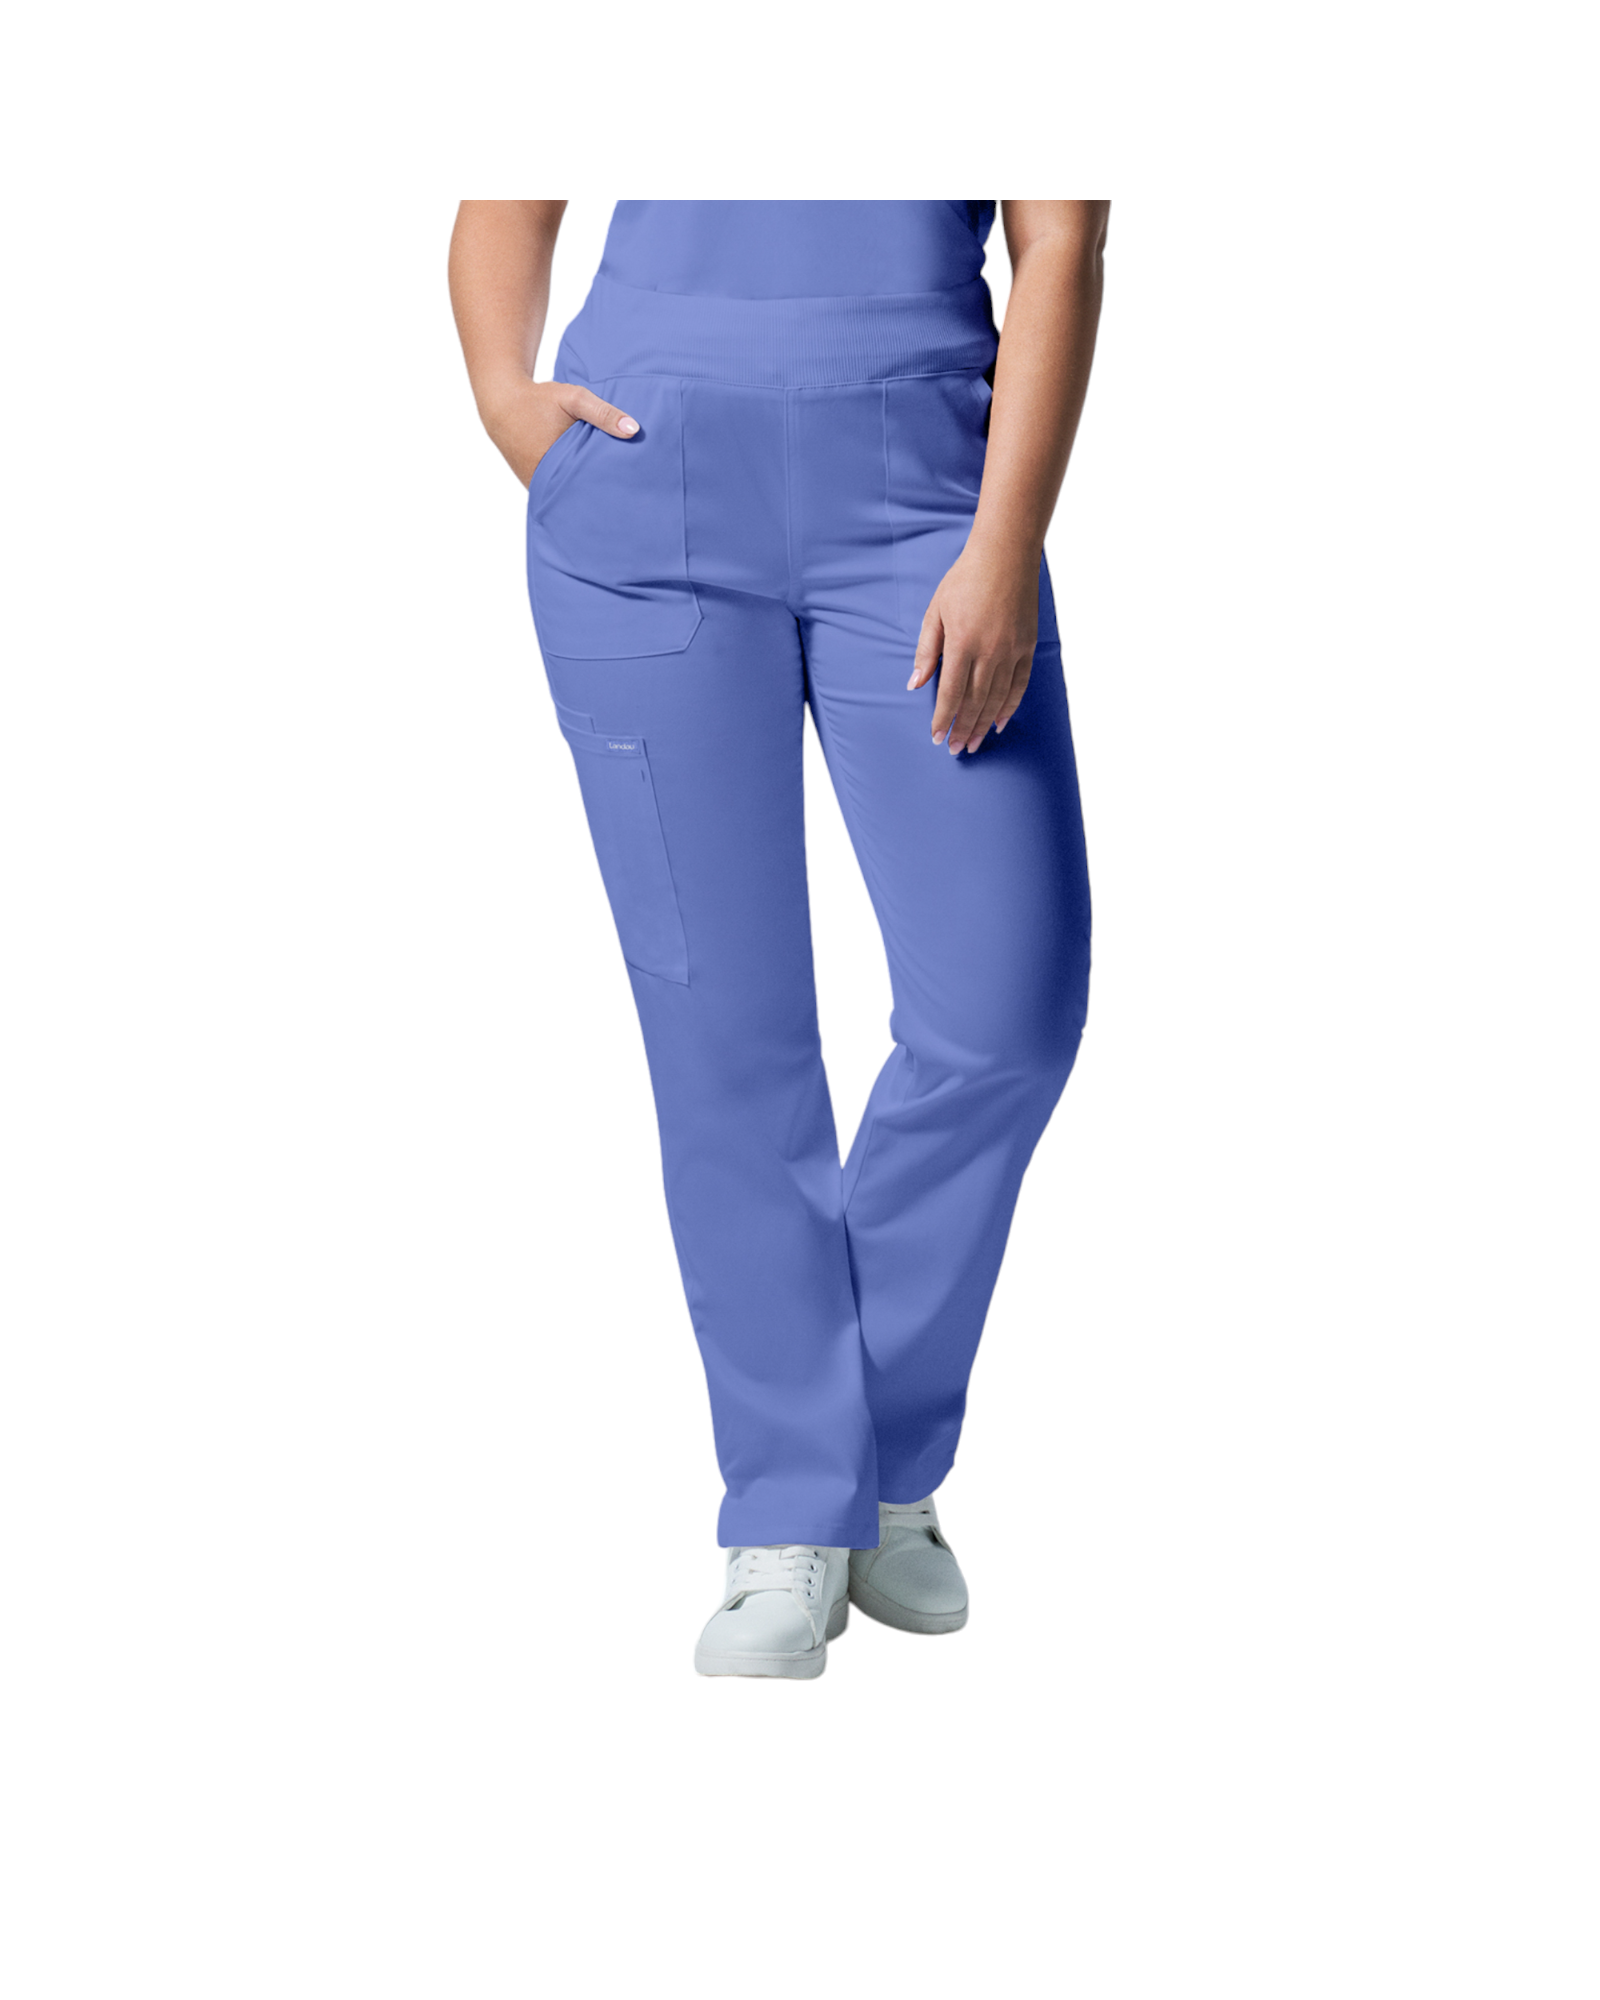 Pantalons 6 poches pour femmes Landau Proflex #LB405 OS couleur Bleu ciel